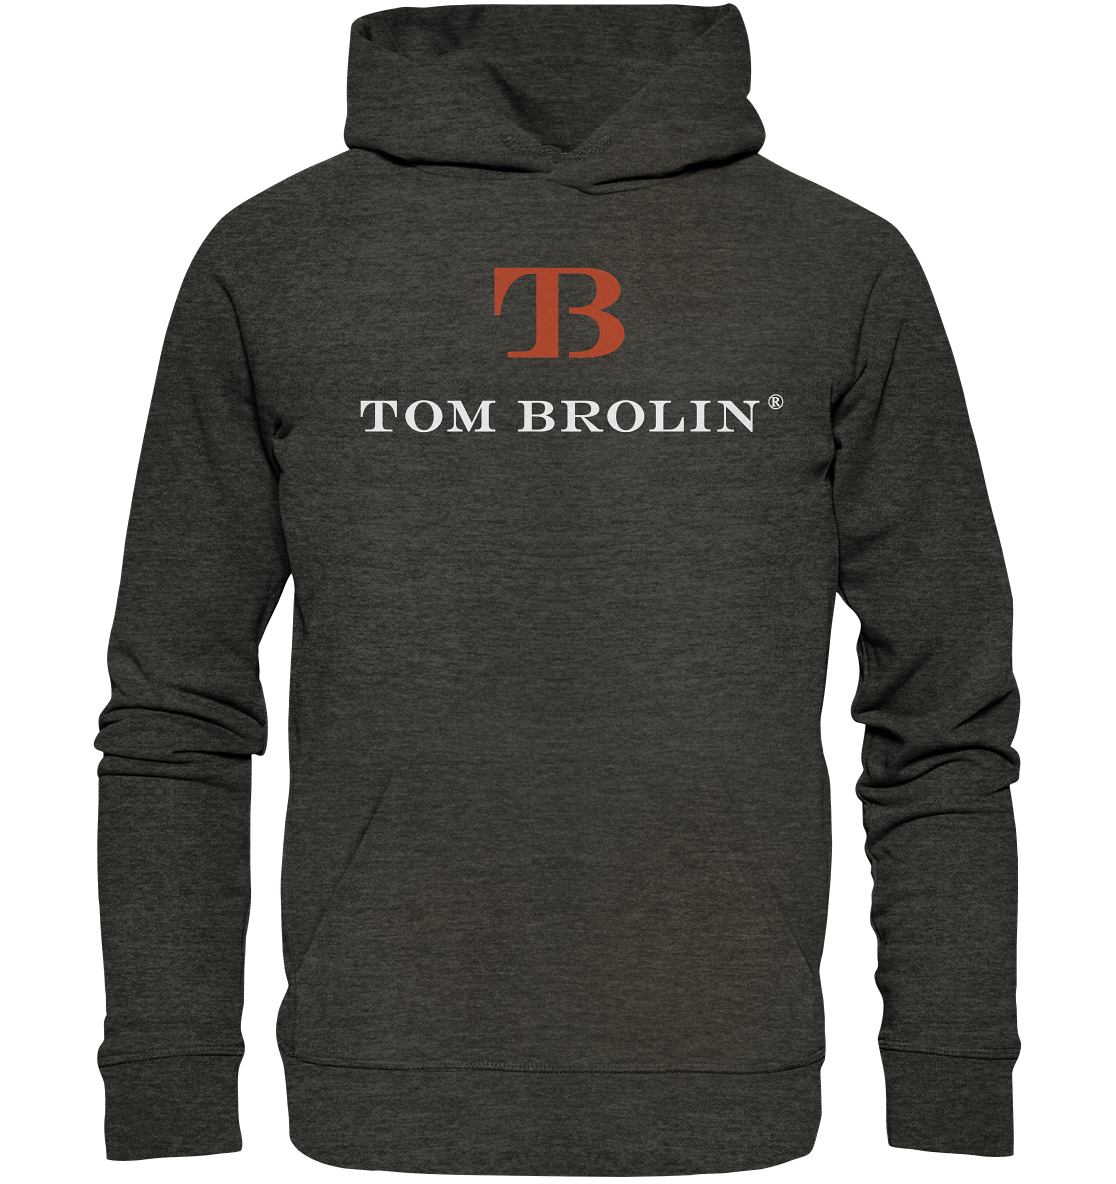 TOM BROLIN - Organic Hoodie (Druck)